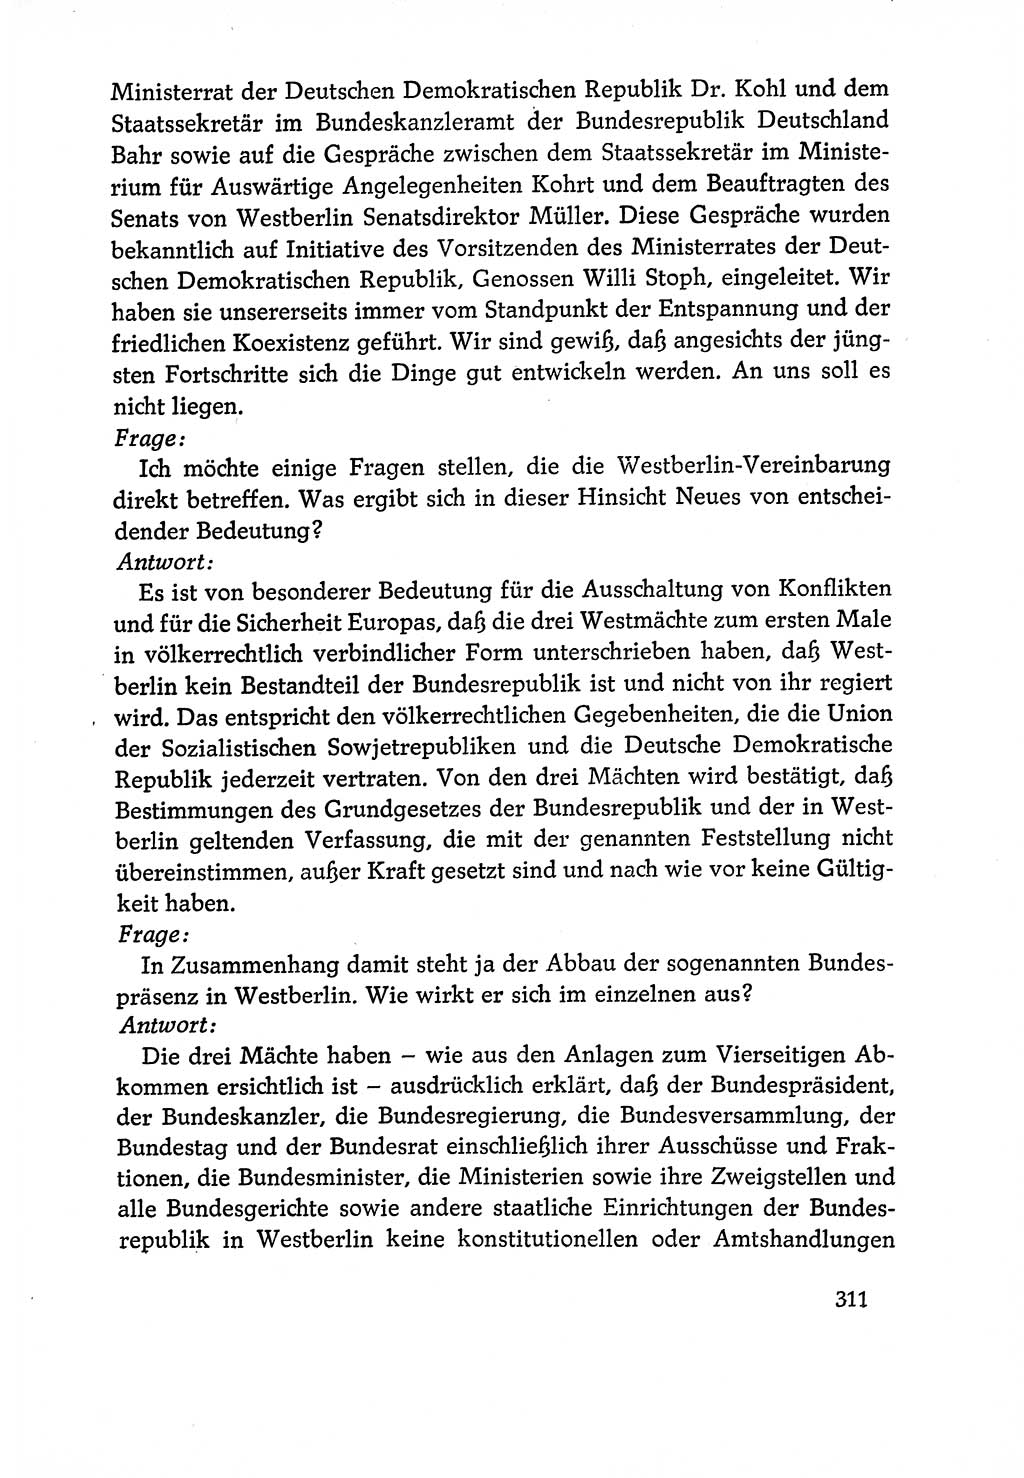 Dokumente der Sozialistischen Einheitspartei Deutschlands (SED) [Deutsche Demokratische Republik (DDR)] 1970-1971, Seite 311 (Dok. SED DDR 1970-1971, S. 311)